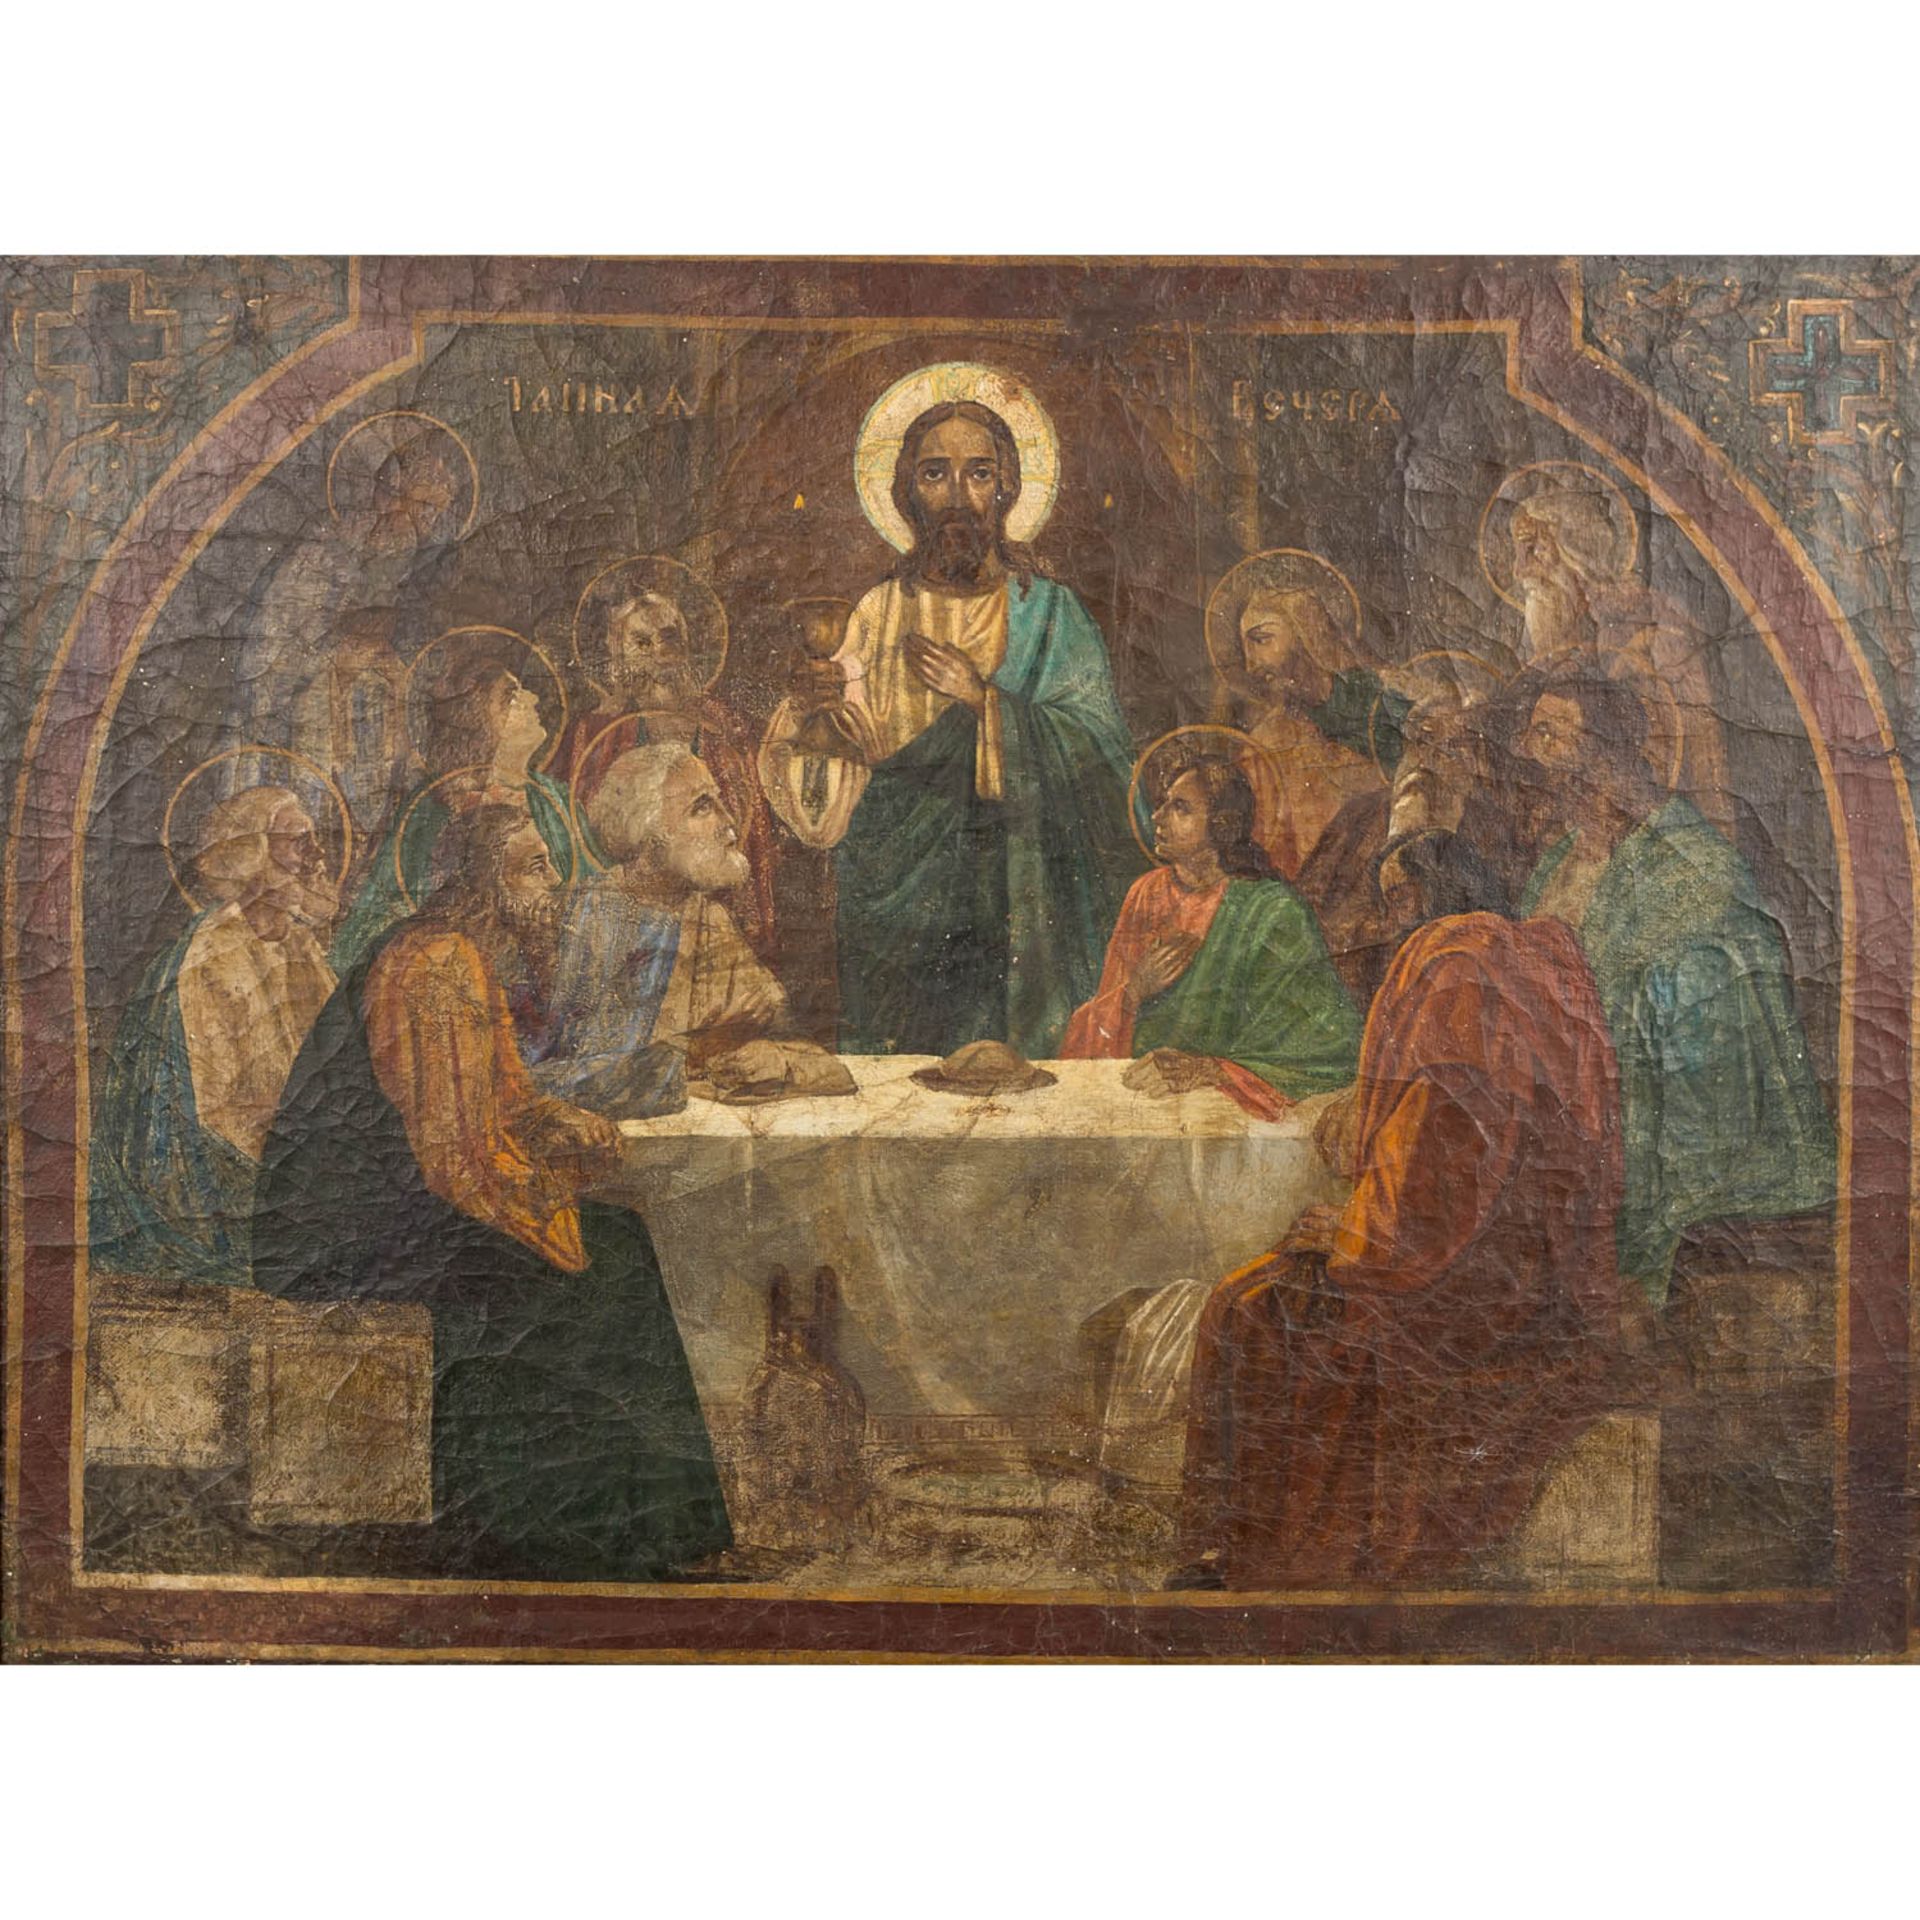 IKONE "Abendmahl", Russland 19. Jh.,Darstellung Christi mit seinen Jüngern, Bezeichnung in